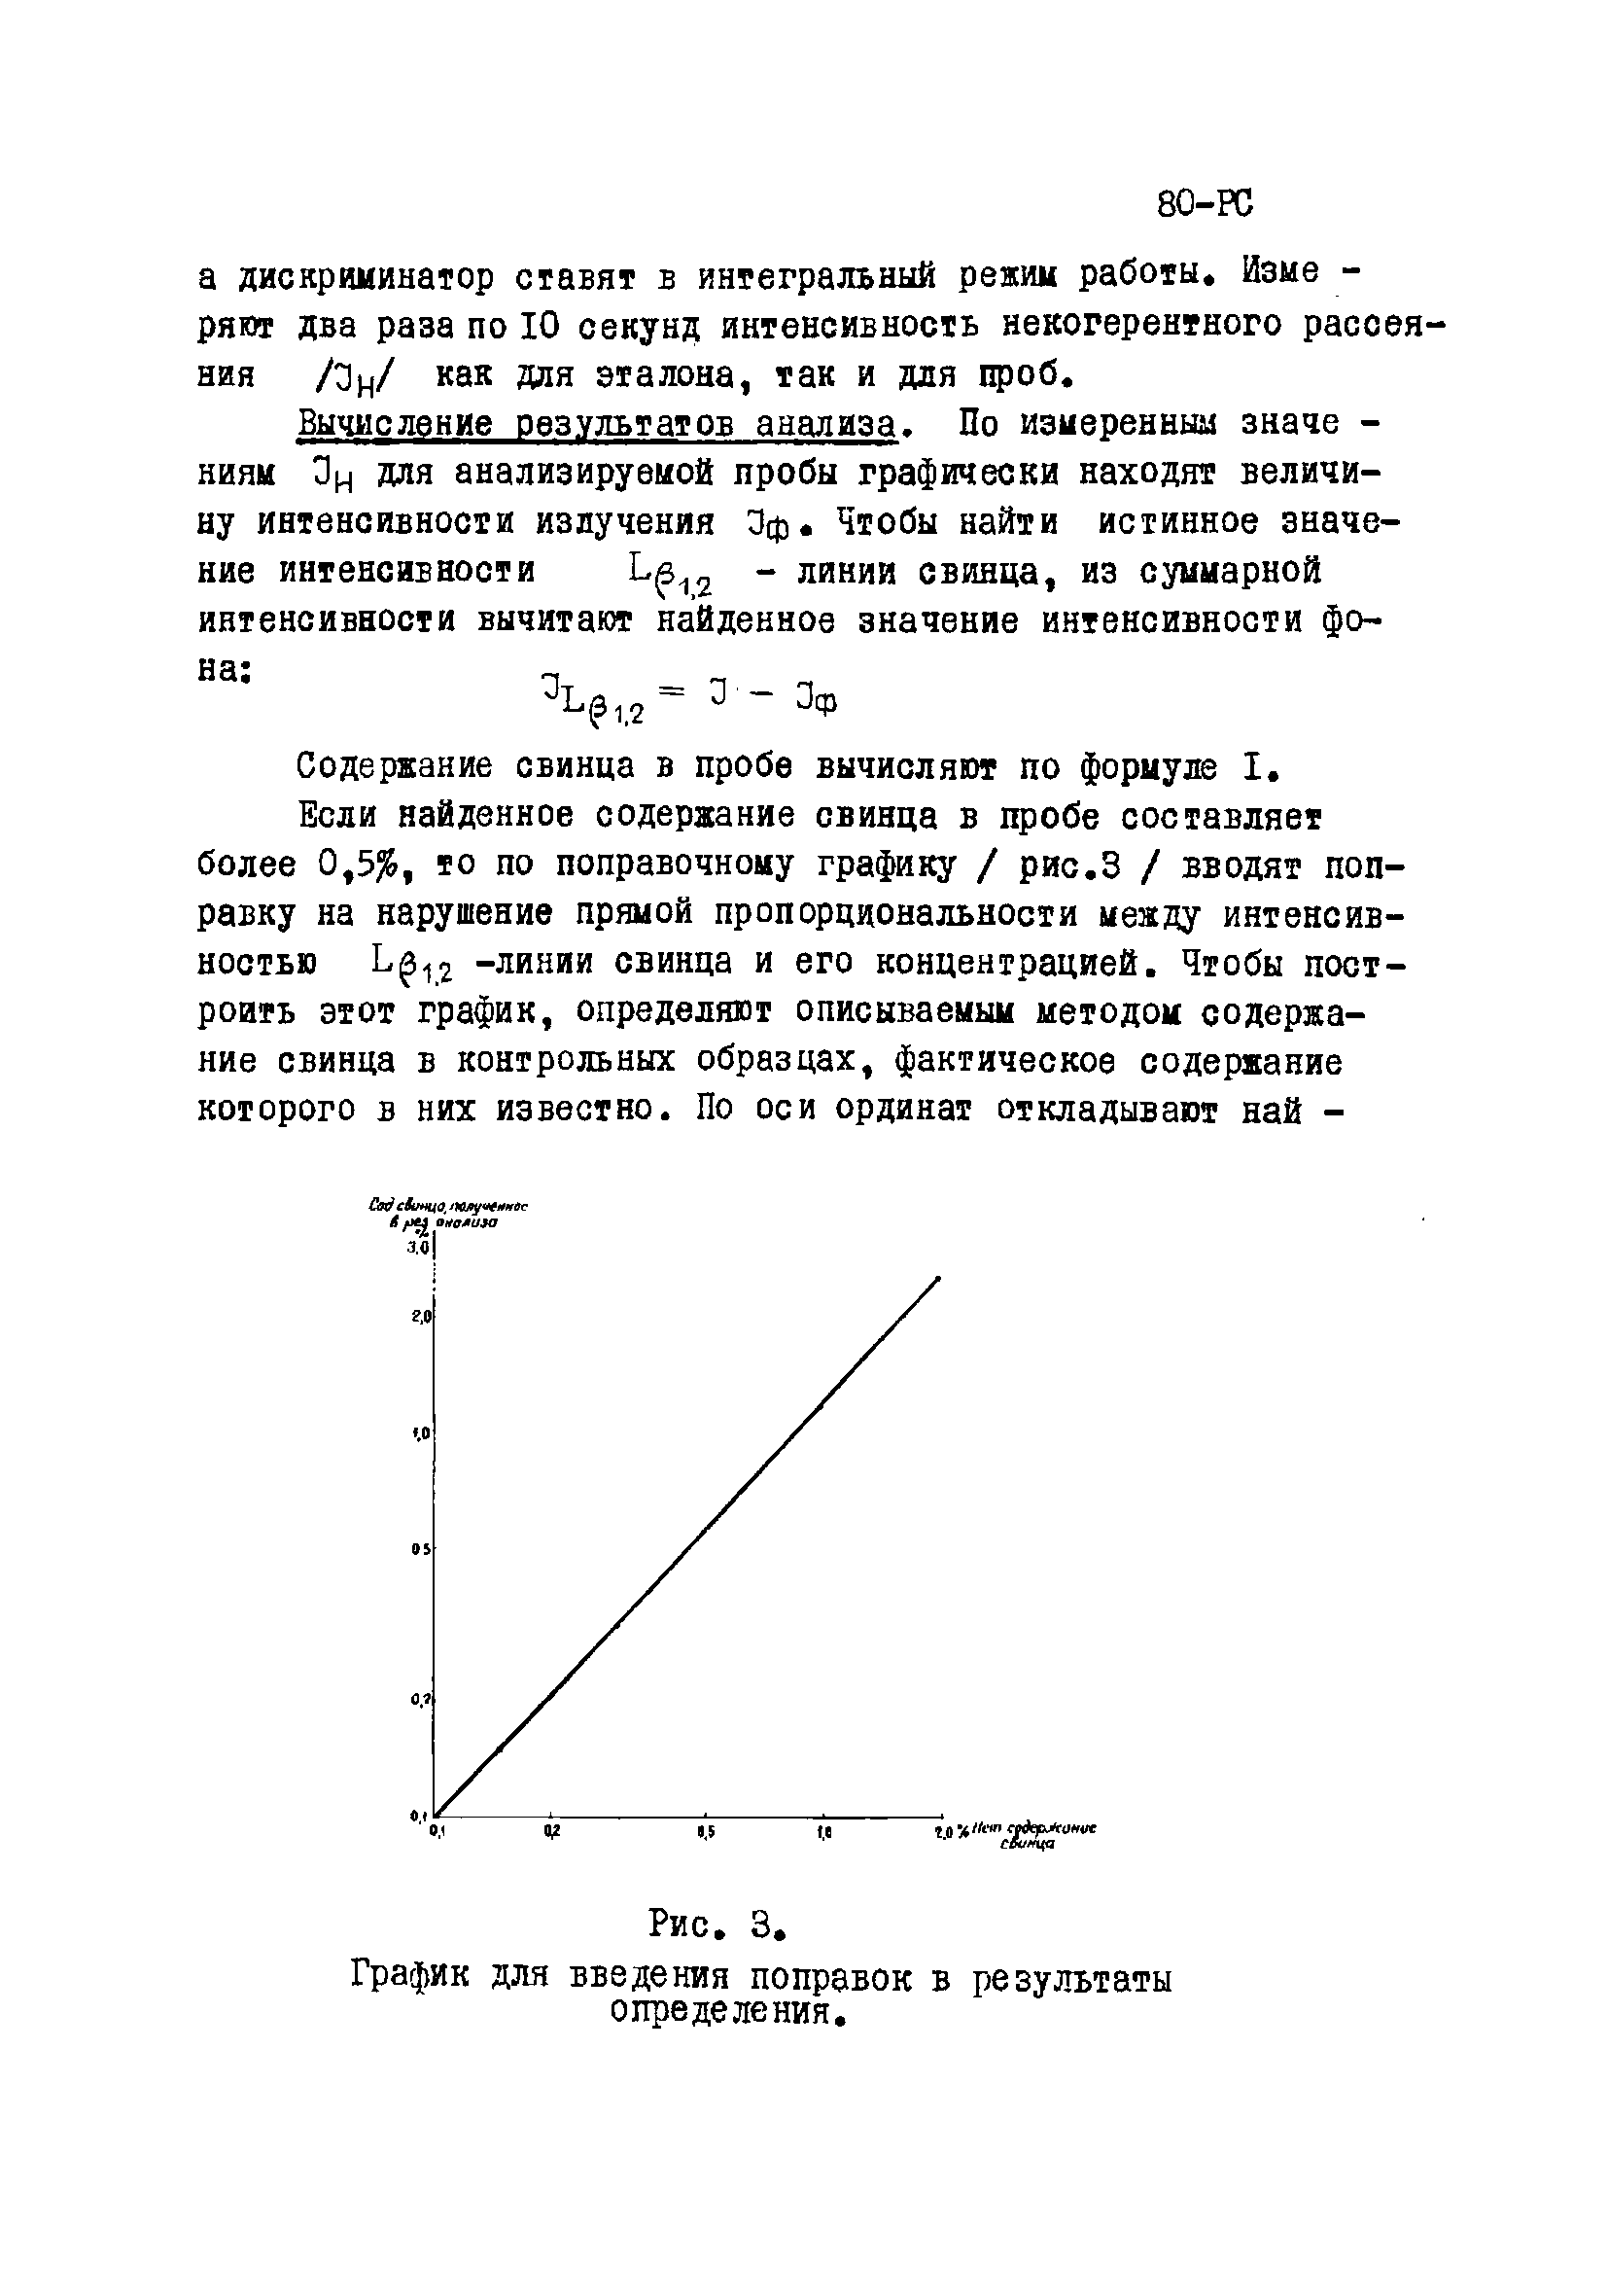 Инструкция НСАМ 80-РС